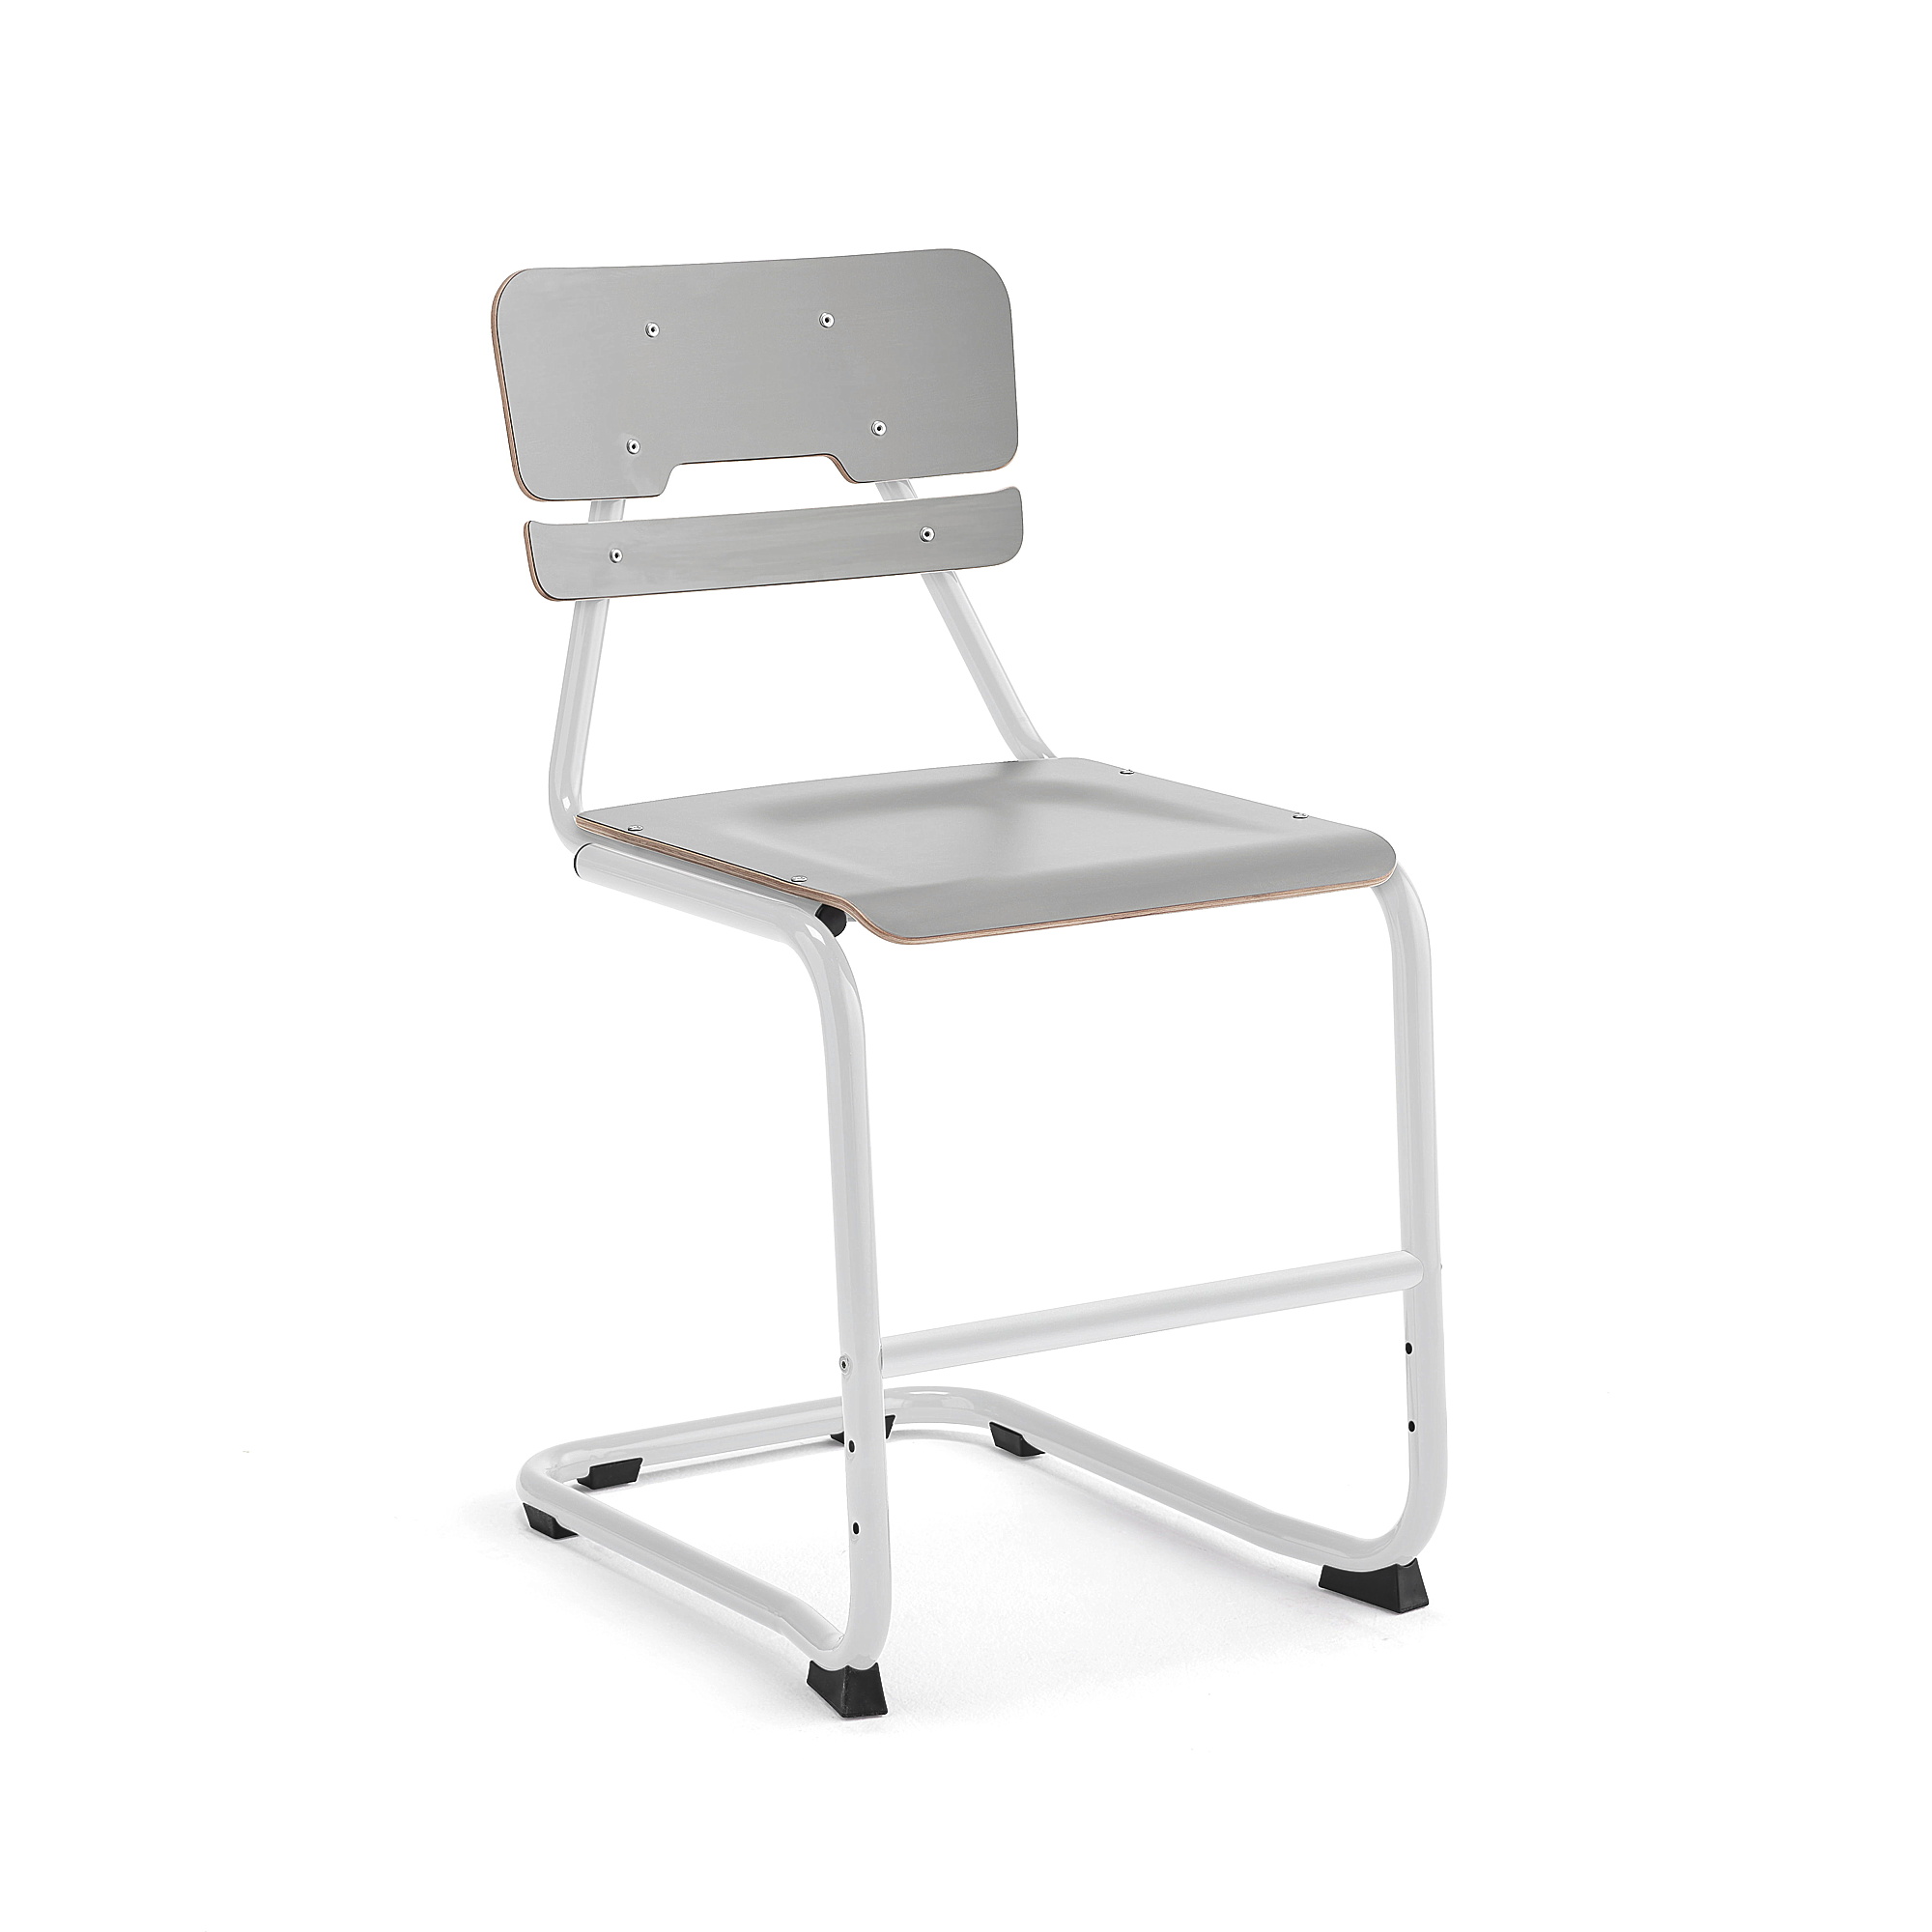 Školní židle LEGERE II, výška 500 mm, bílá, šedá